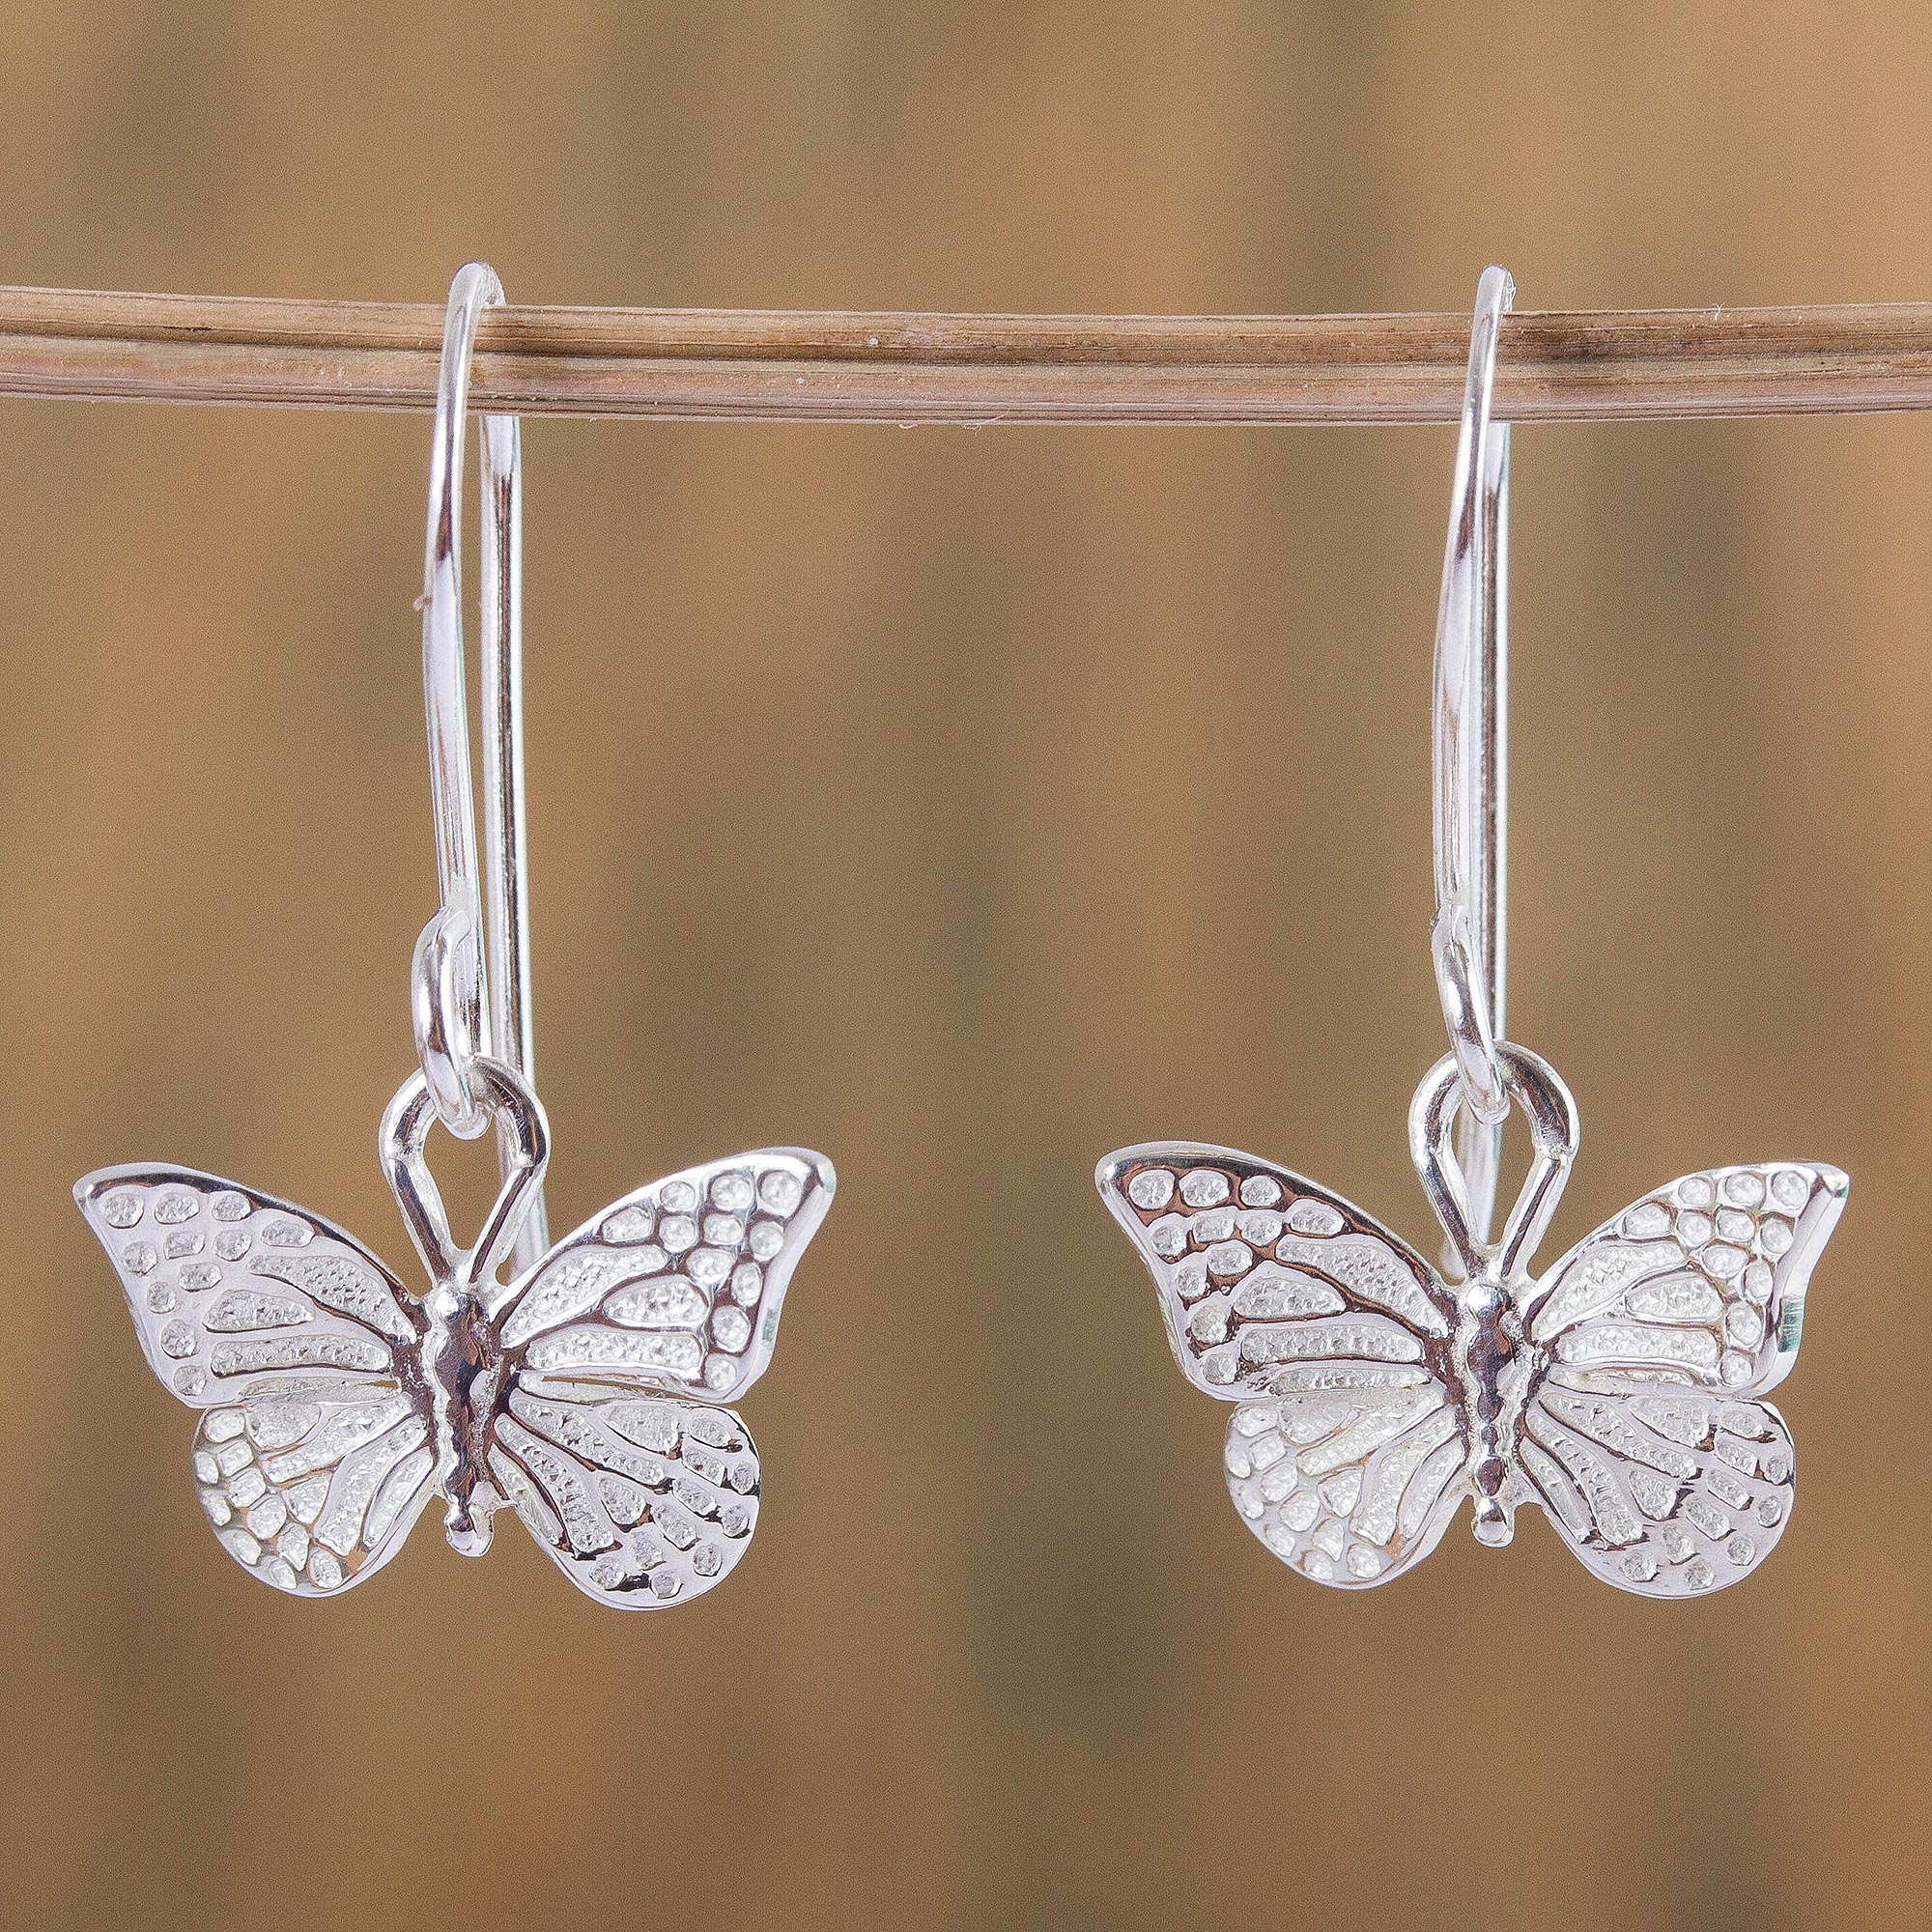 butterfly wings wood earrings dangle butterfly earrings earrings in Canada wood butterfly earrings Butterfly earrings